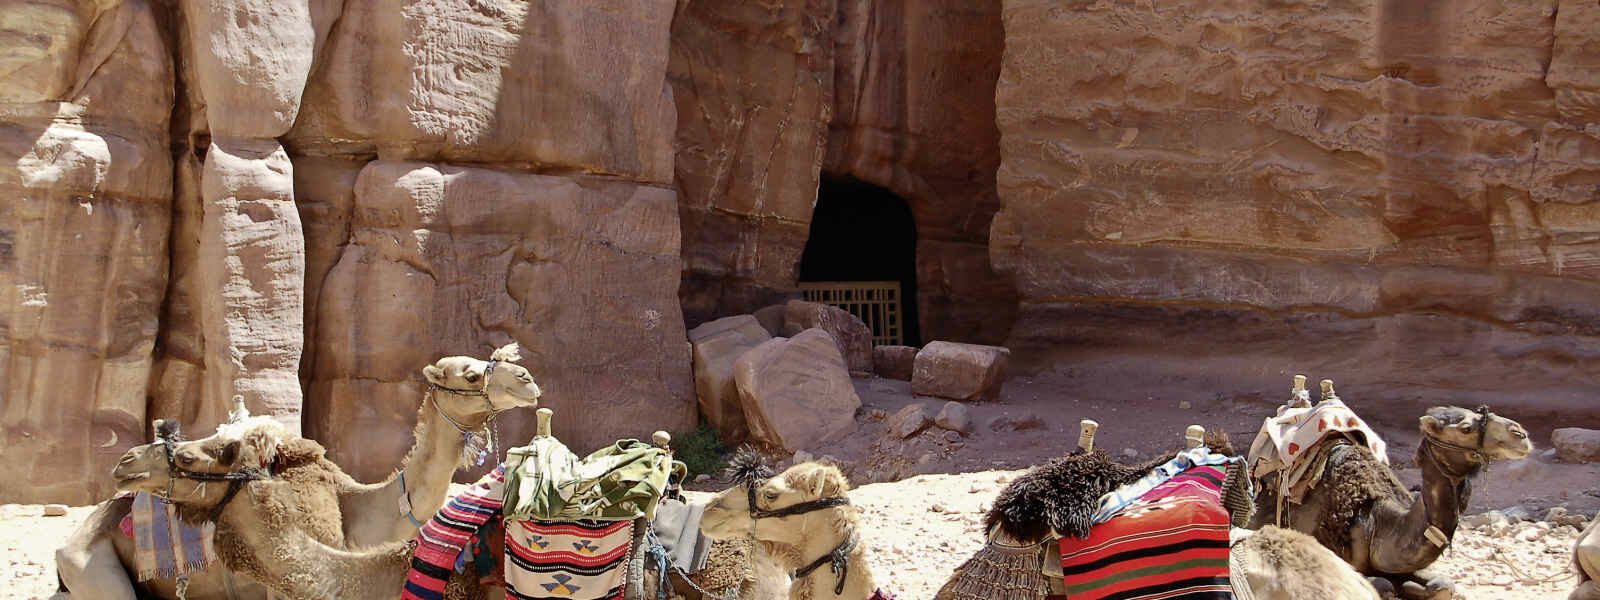 Camels resting, Petra